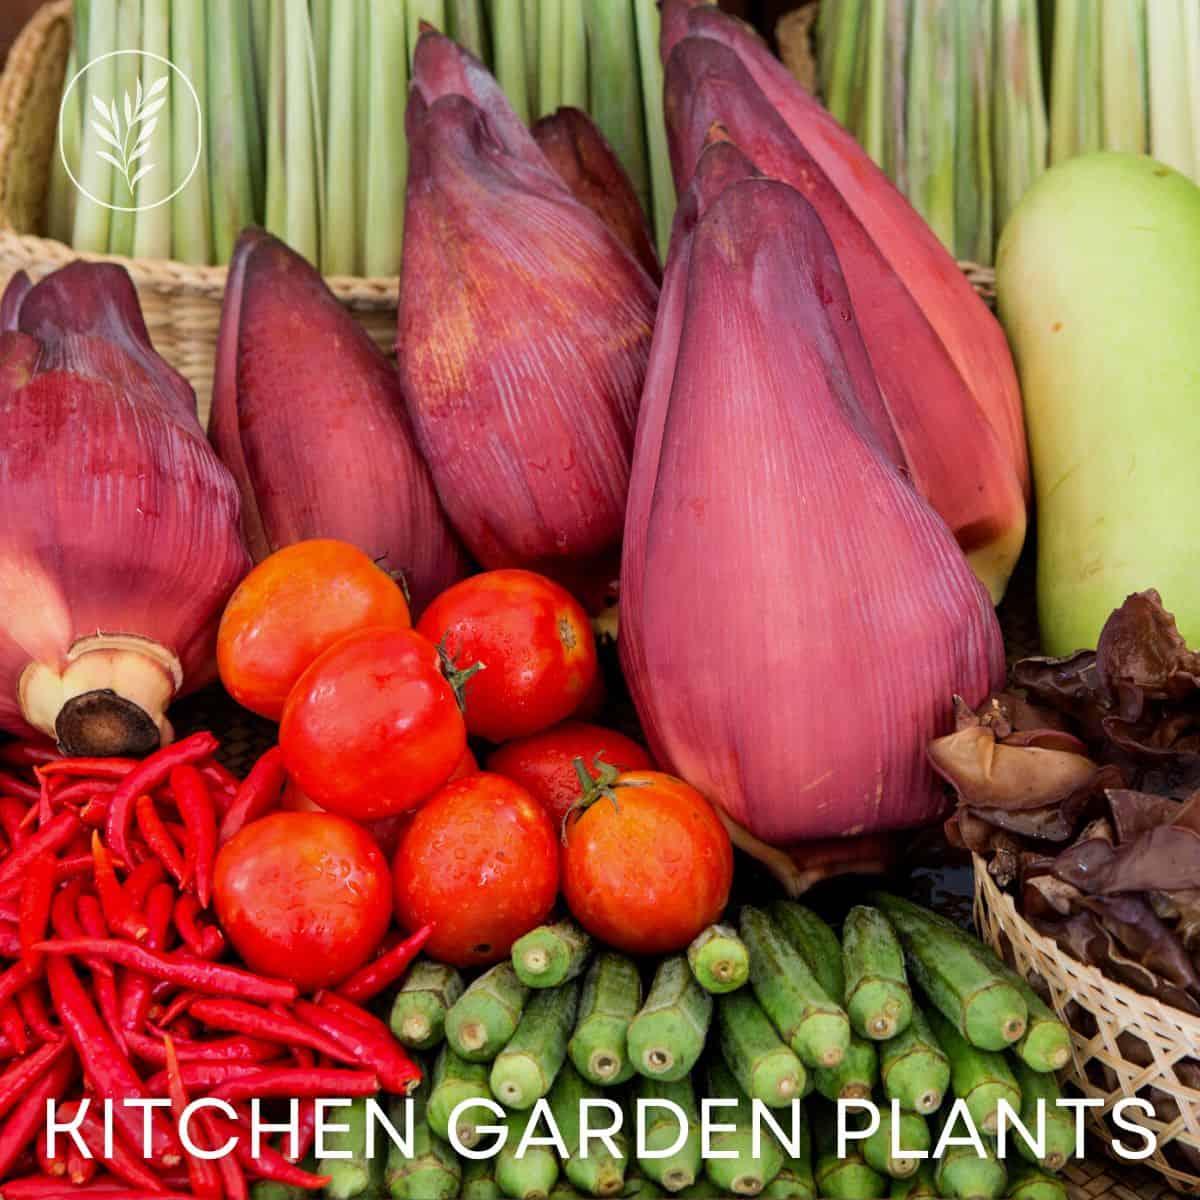 Kitchen garden plants via @home4theharvest